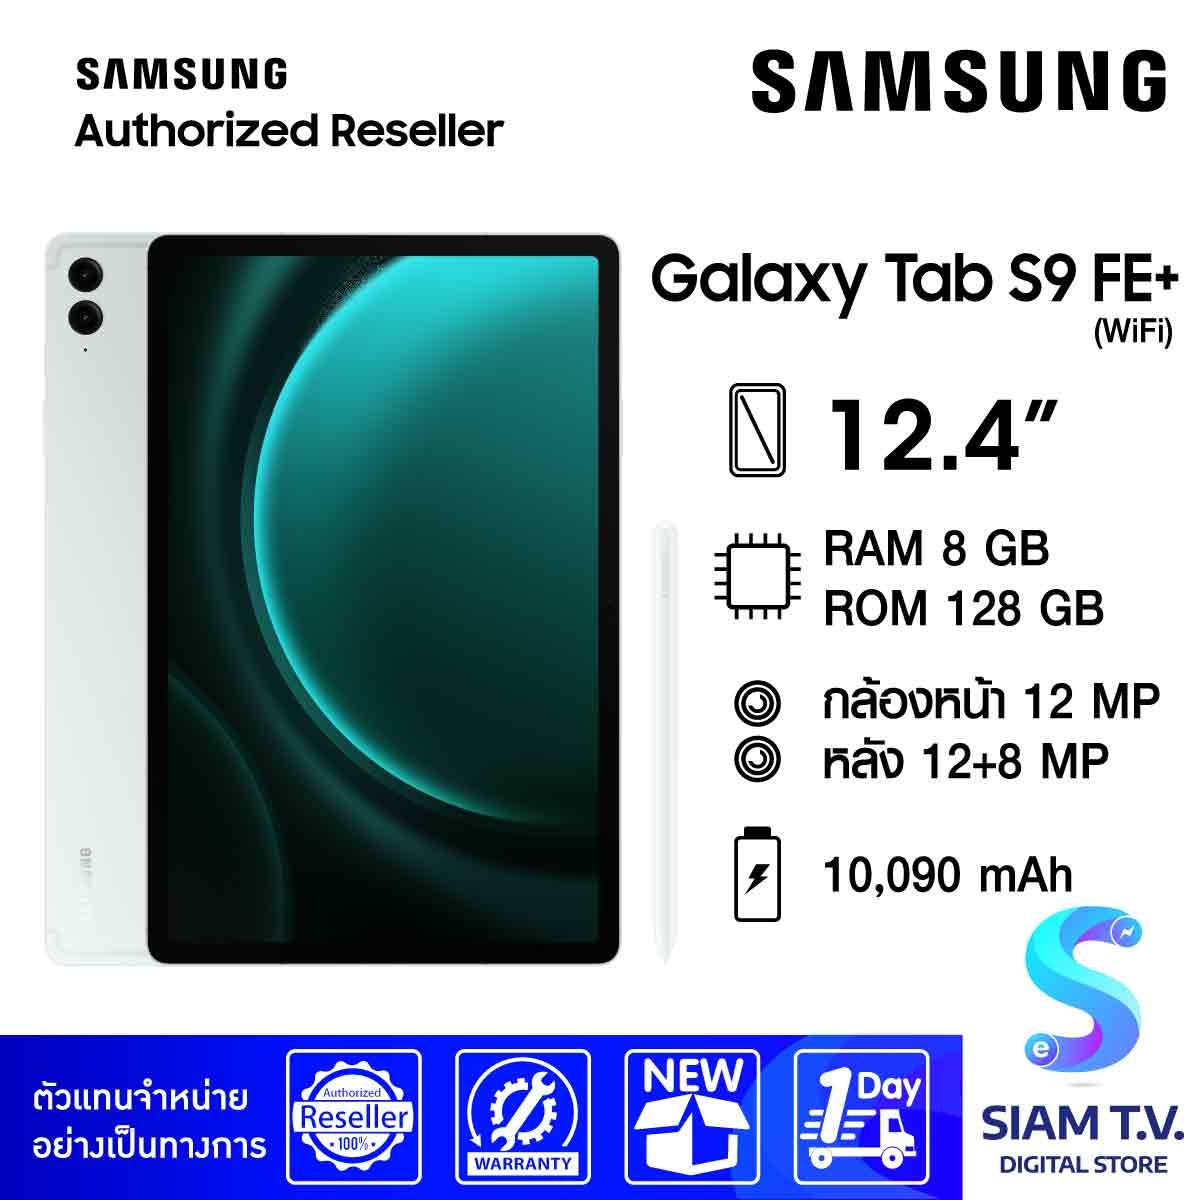 Samsung  Galaxy Tab S9 FE+  WiFi  ( RAM 8 GB / ROM 128 GB )